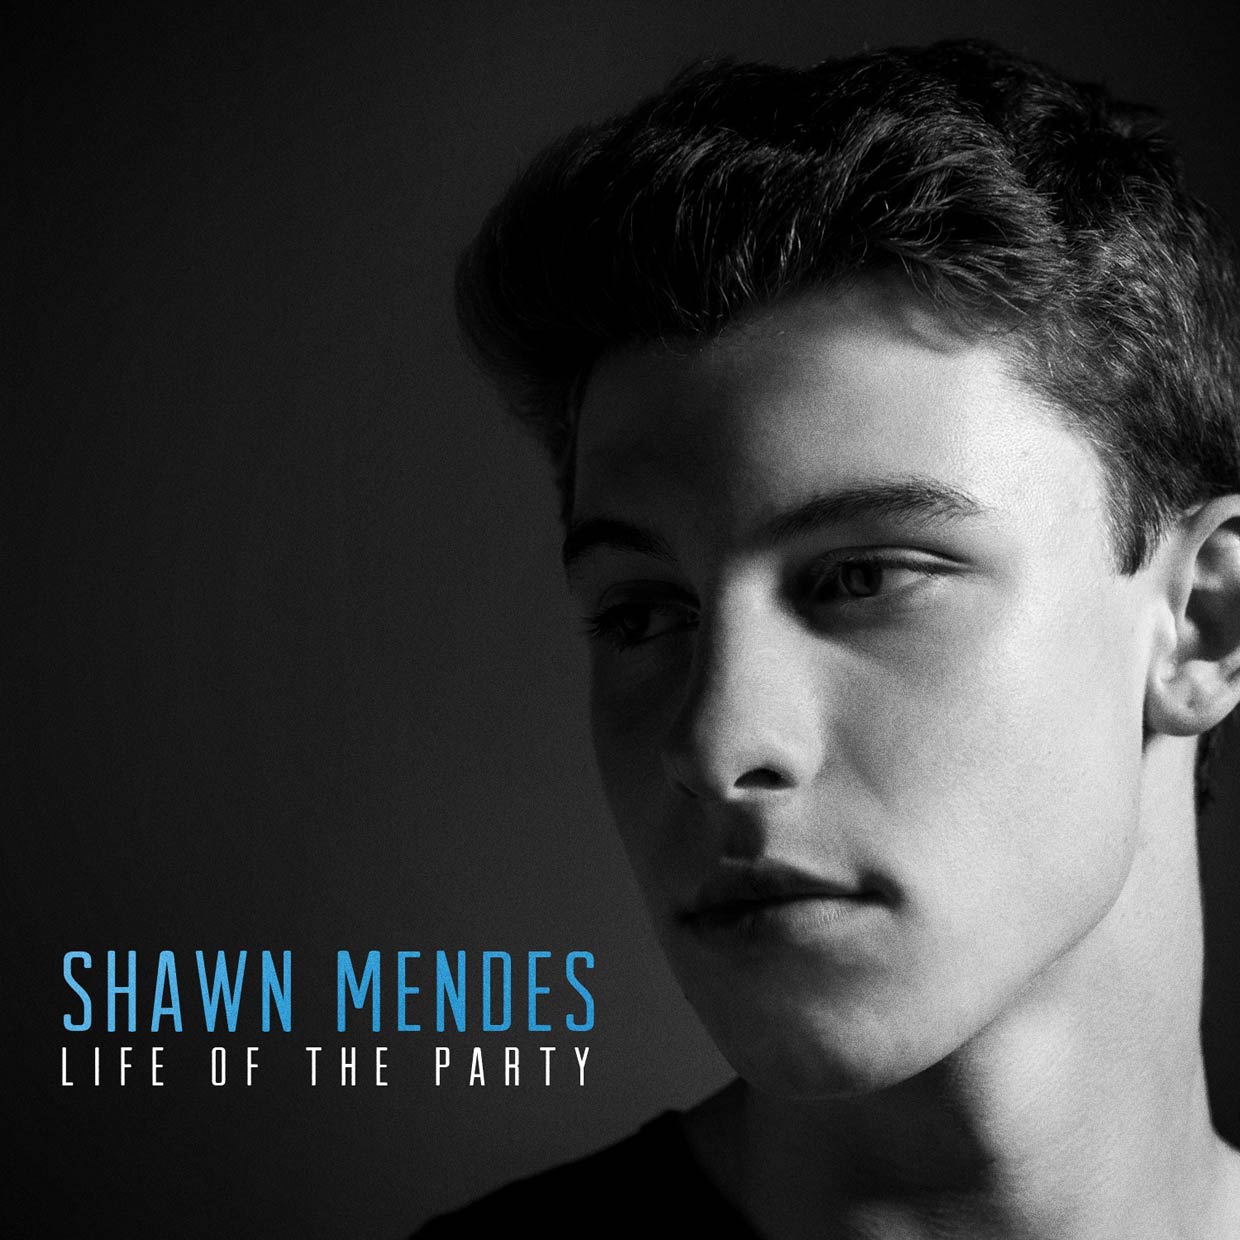 Shawn Mendes: Life of the party, la portada de la canción